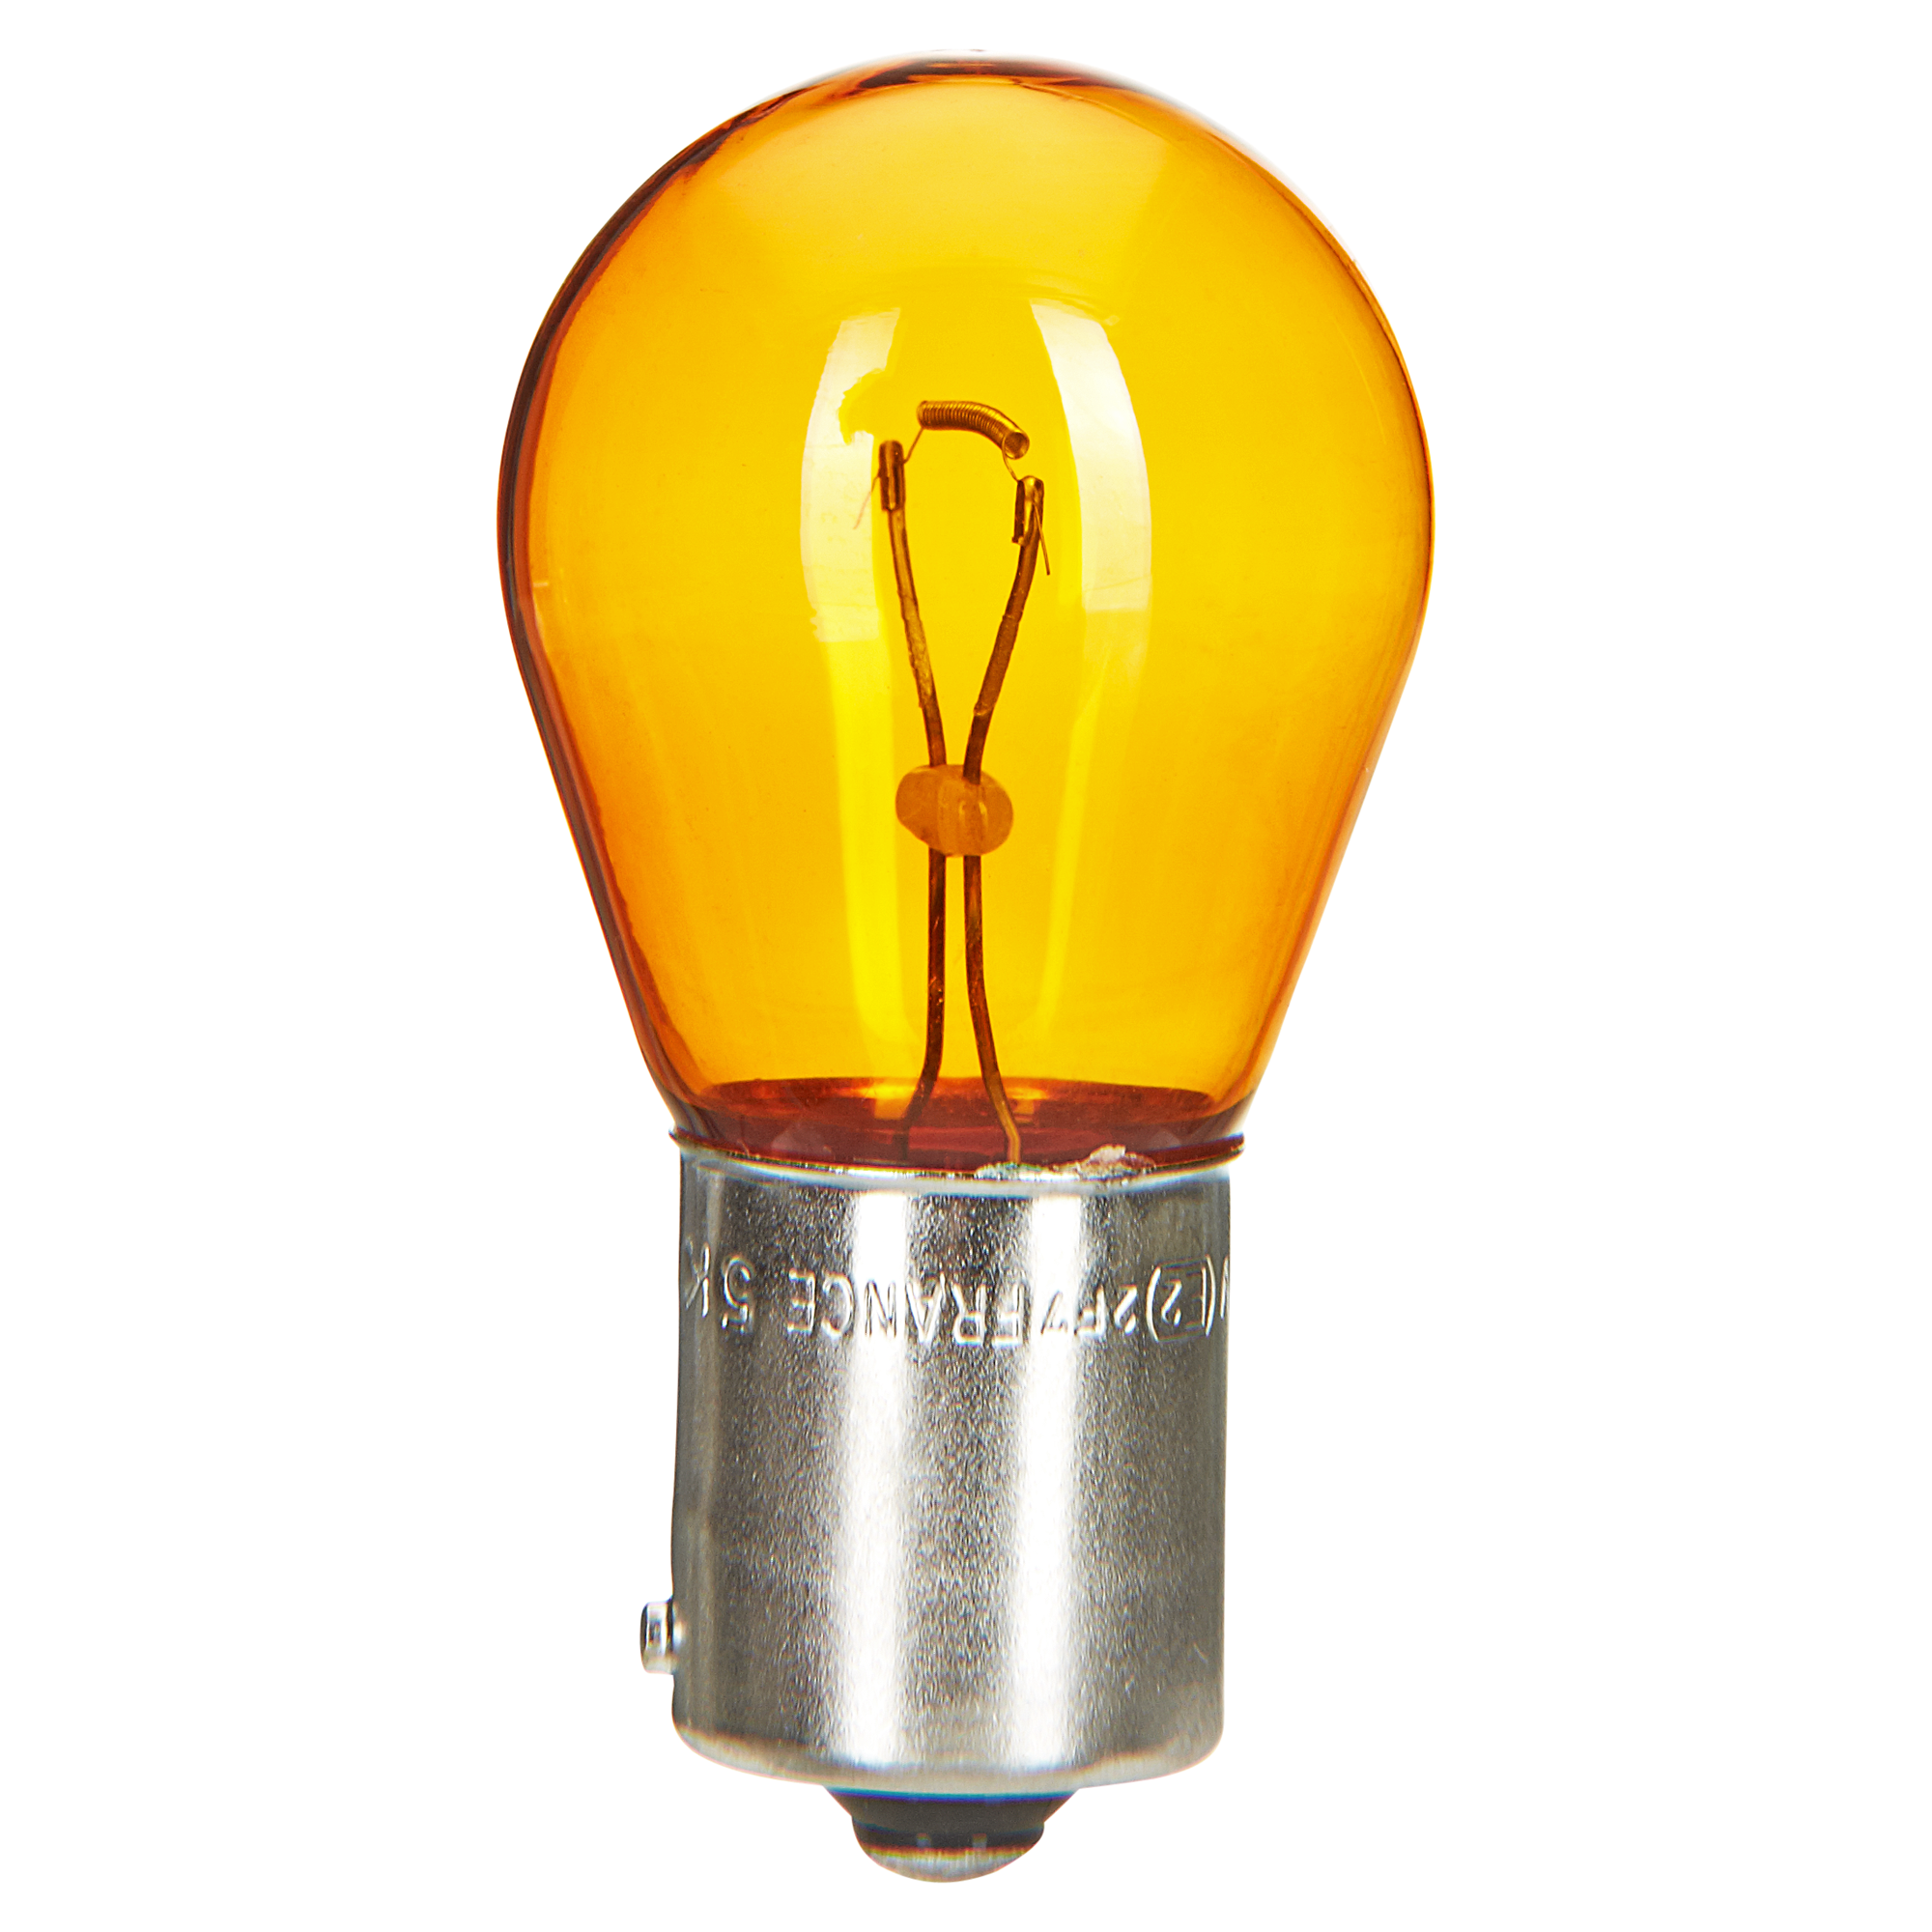 Philips Kugellampe ‚Vision‘ 21 W gelb 2 Stück